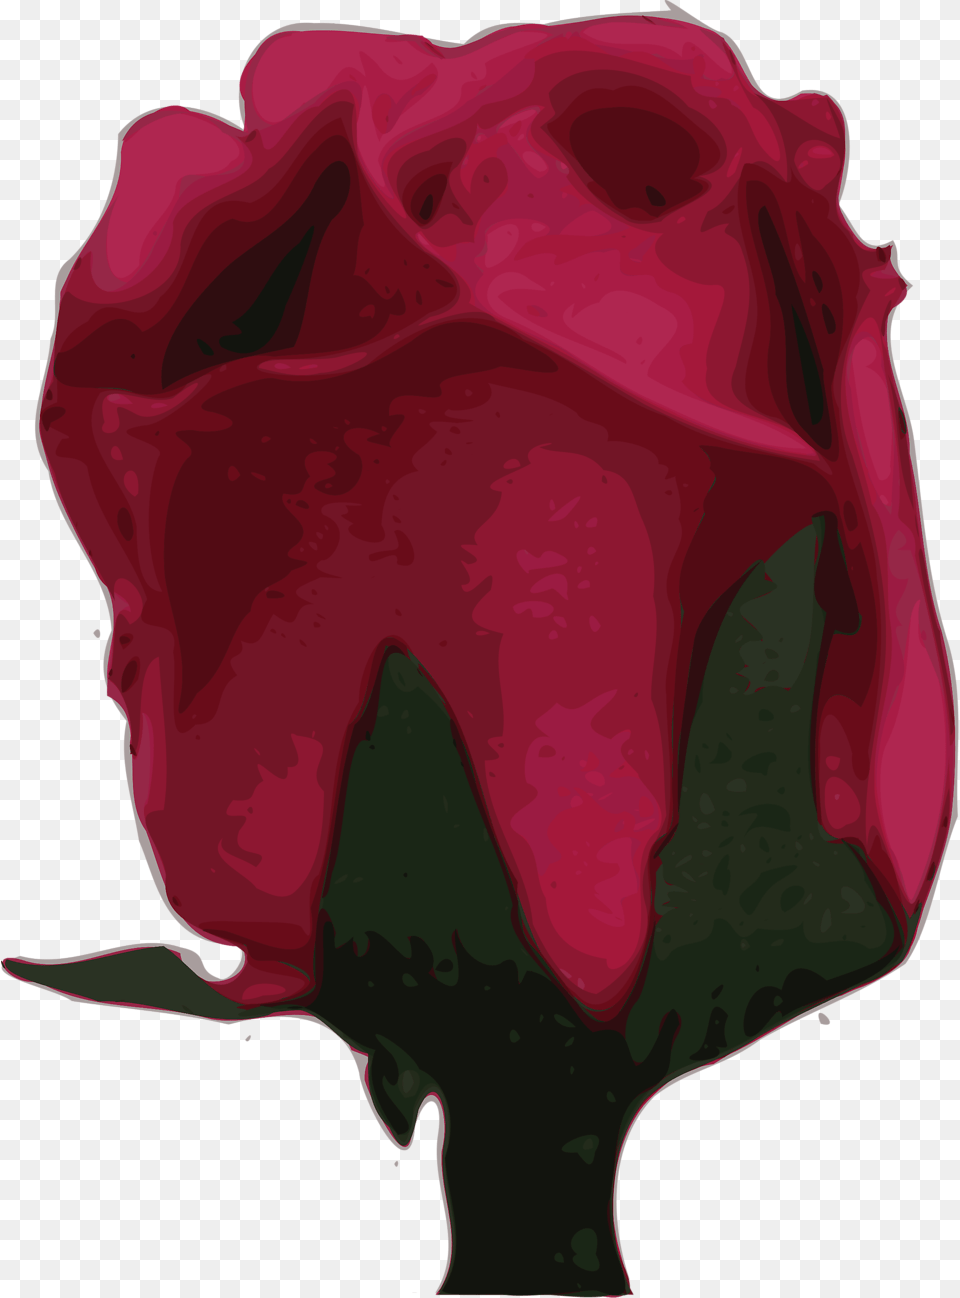 Purple Rose Clipart Romantic, Flower, Petal, Plant, Animal Free Transparent Png